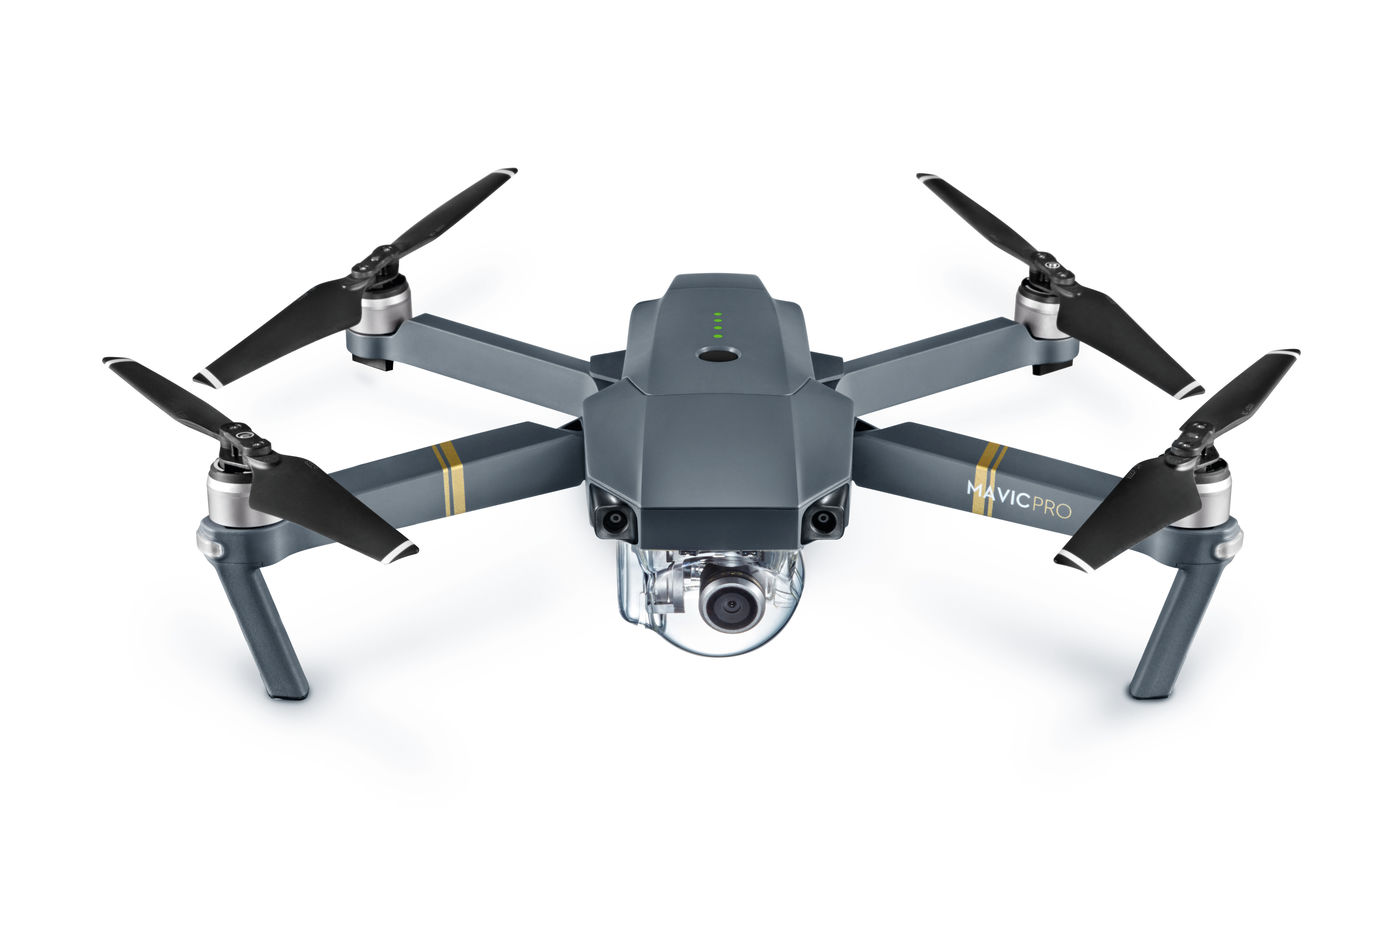 Gewinnspiel: Jetzt wertvolle Mavic Pro Drohne sichern!